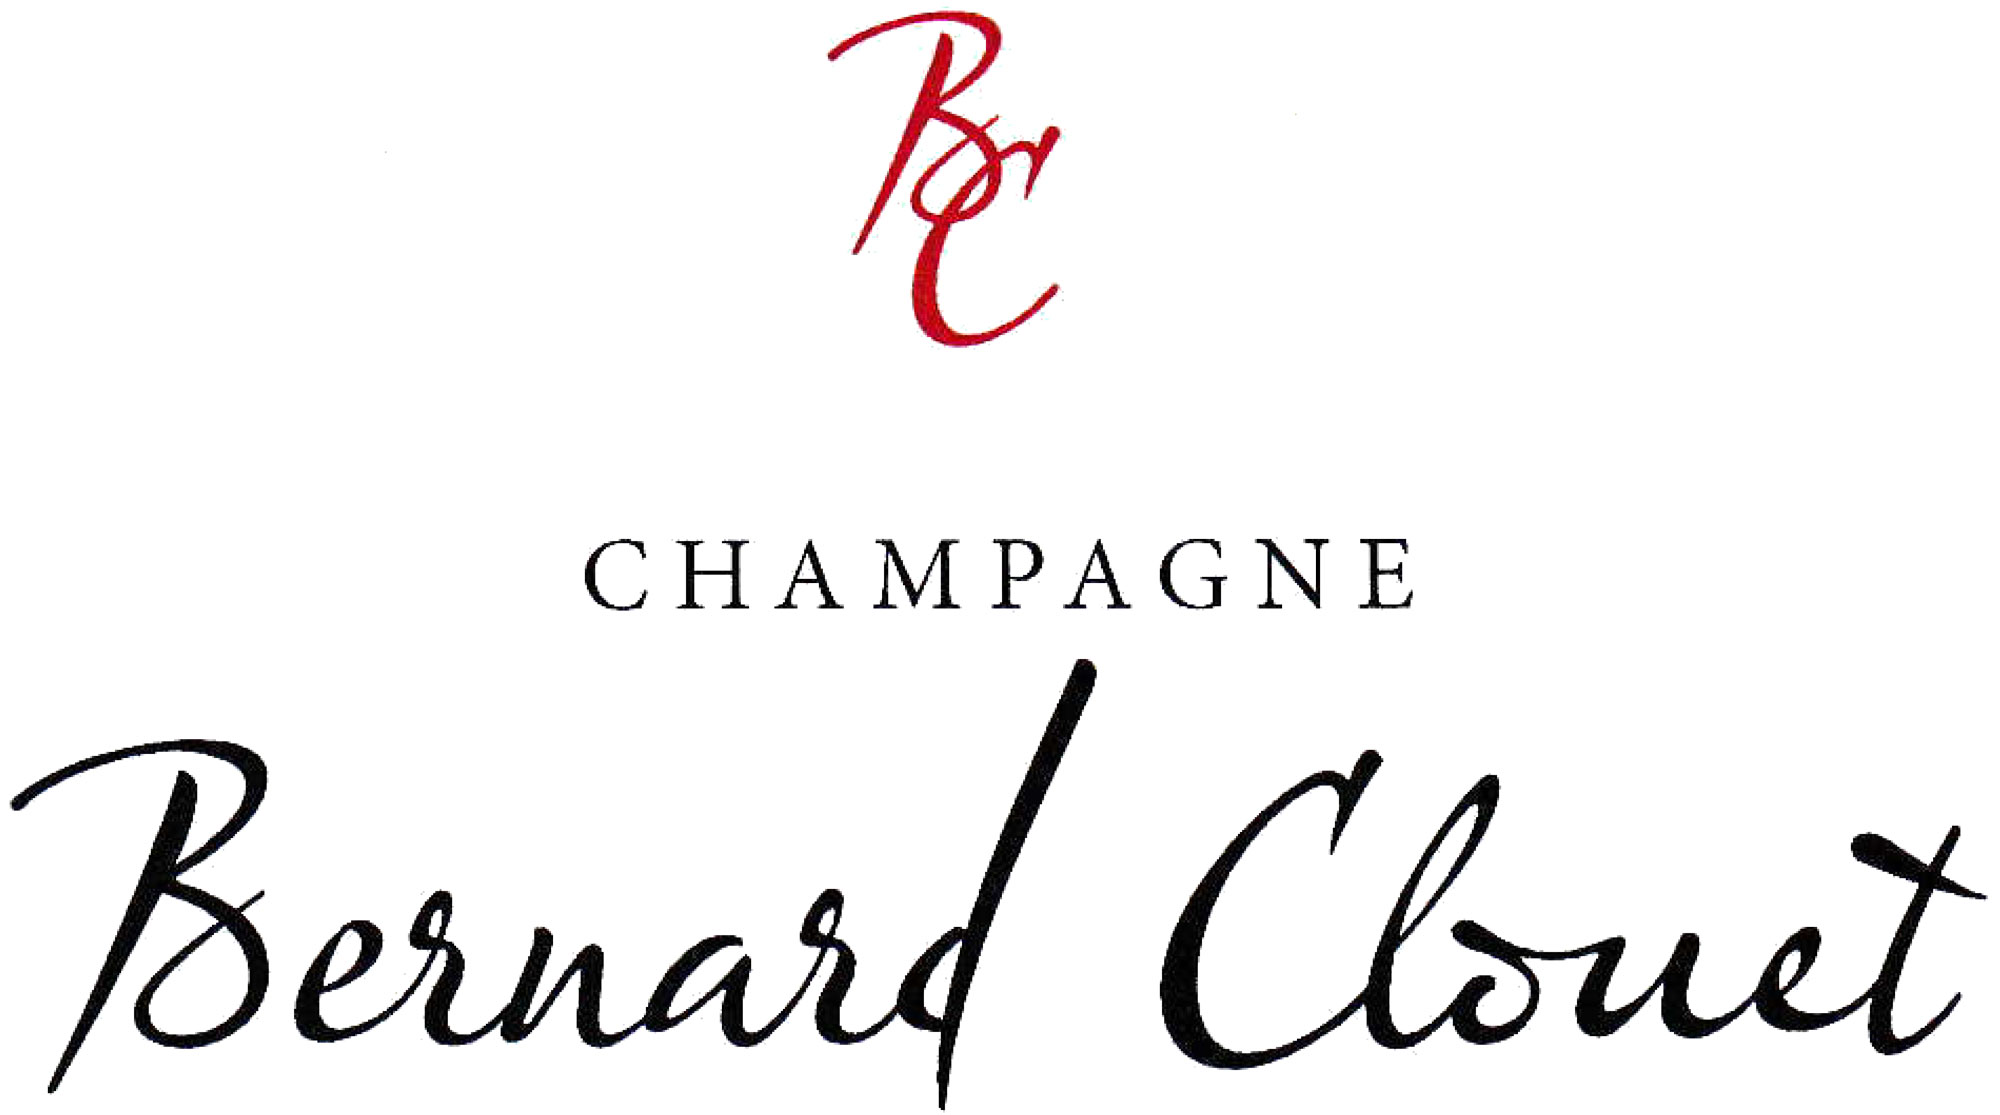 Champagne Bernard Clouet